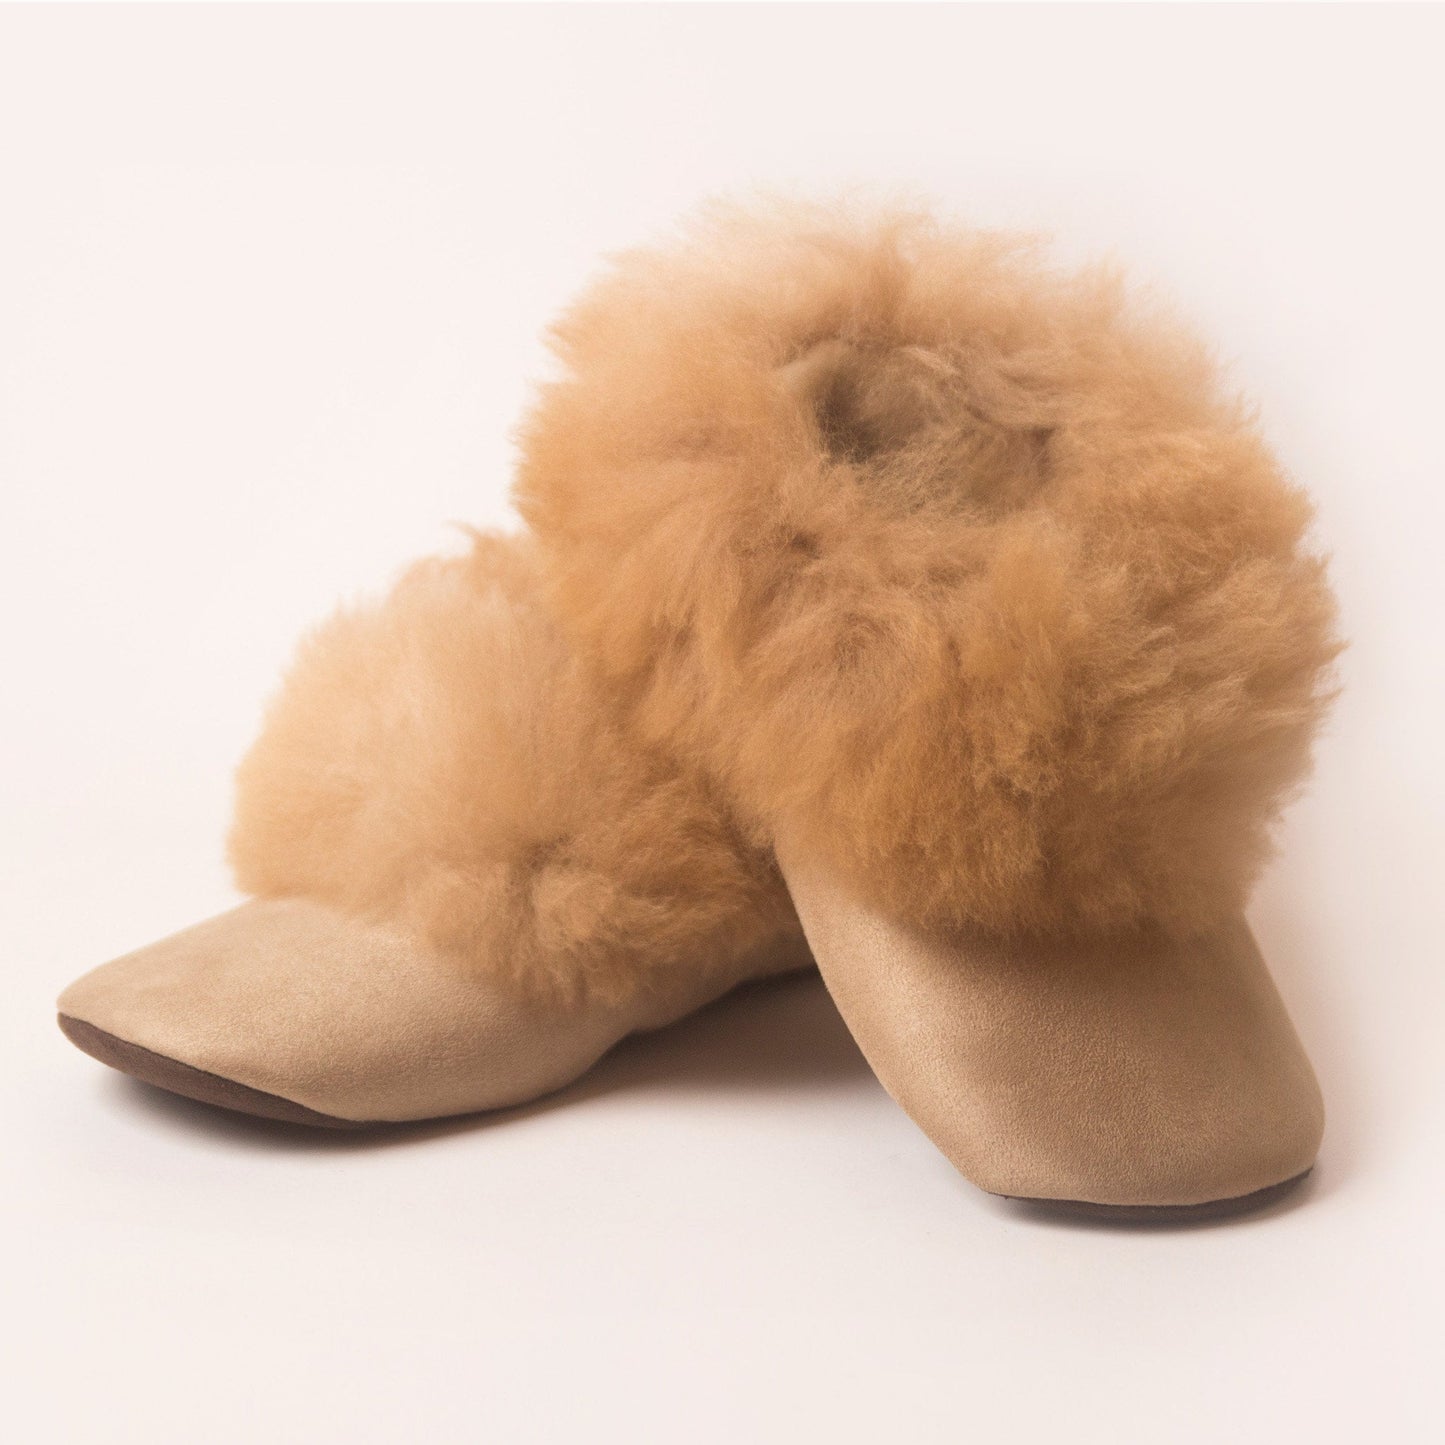 Alpaca Fur Slippers | Beige Slippers Alpaca Fur | Handmade Fur Slippers